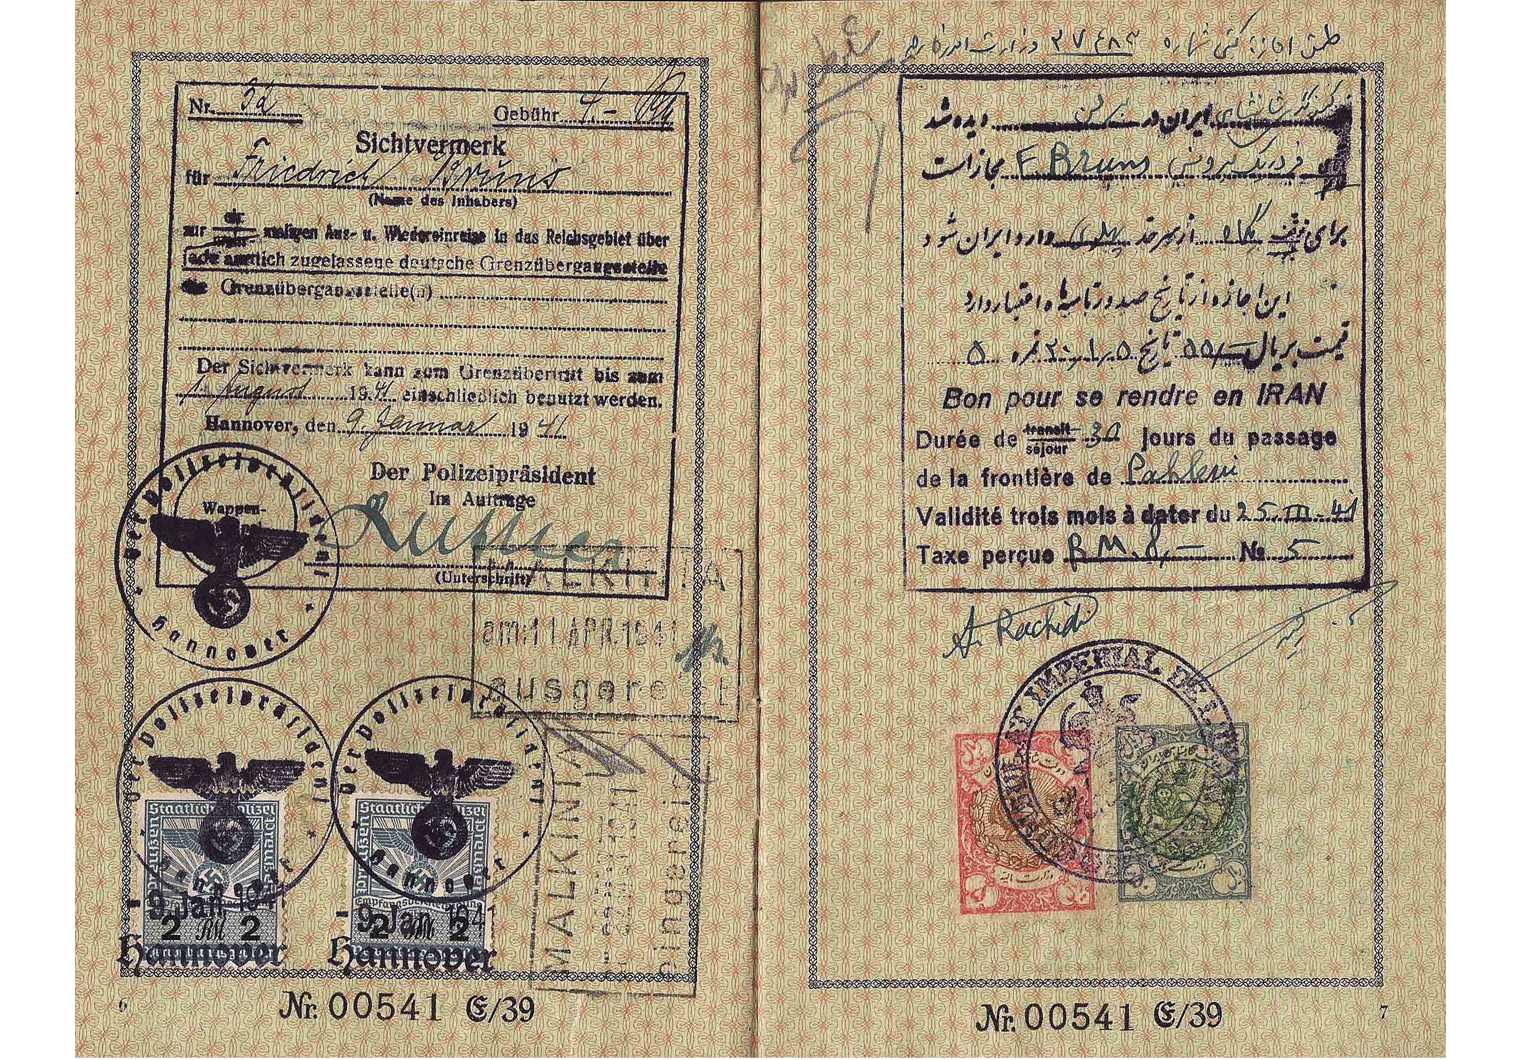 Iranian visa WW2 - German passport